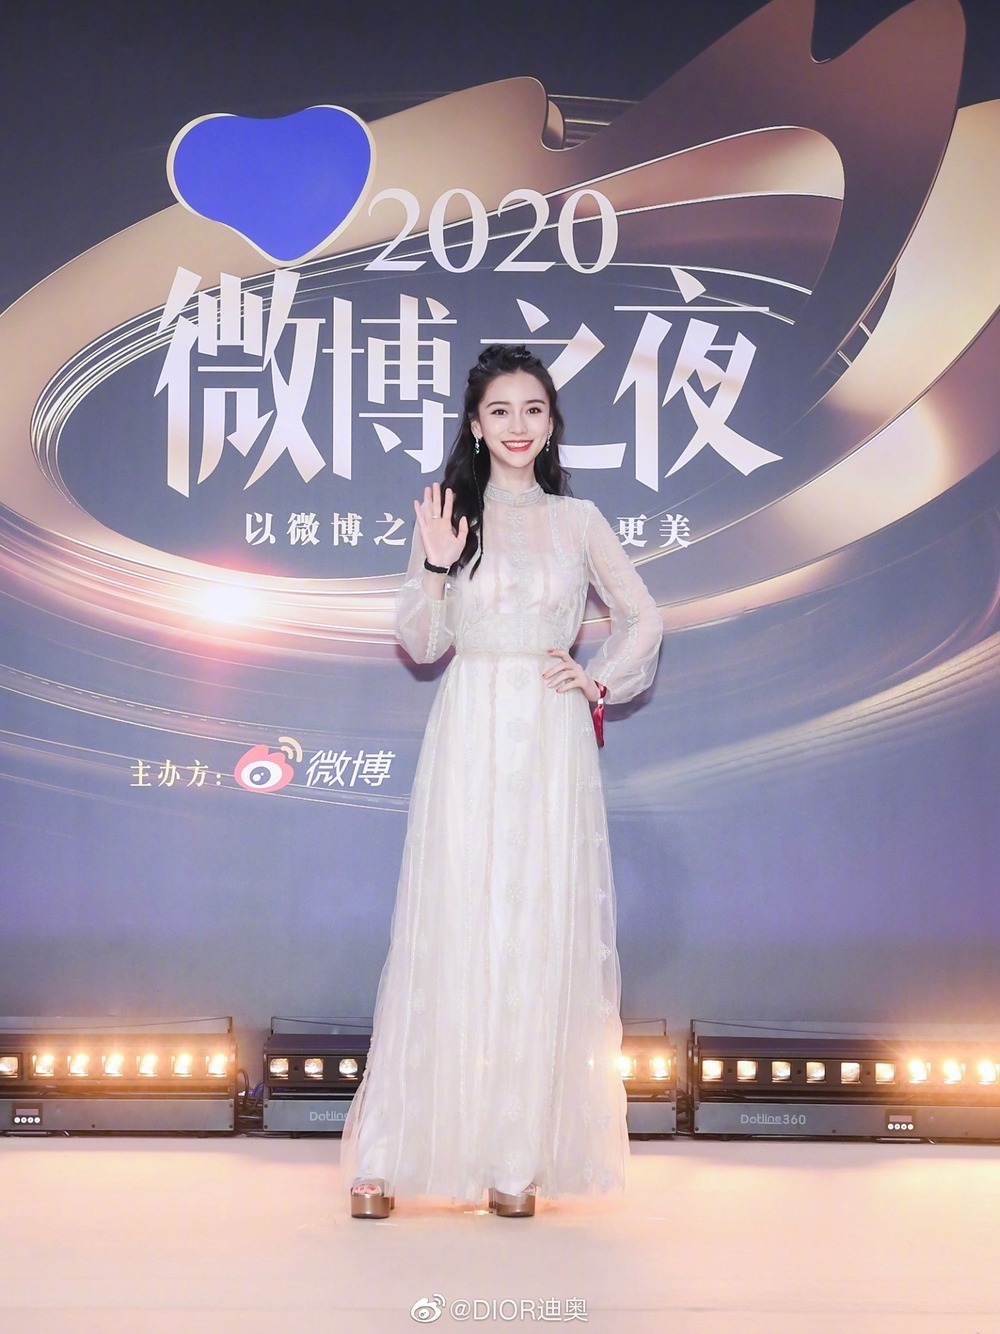  
Trang phục khiến Angela Baby bị nhạt nhòa so với những mỹ nhân khác trong Đêm Hội Weibo